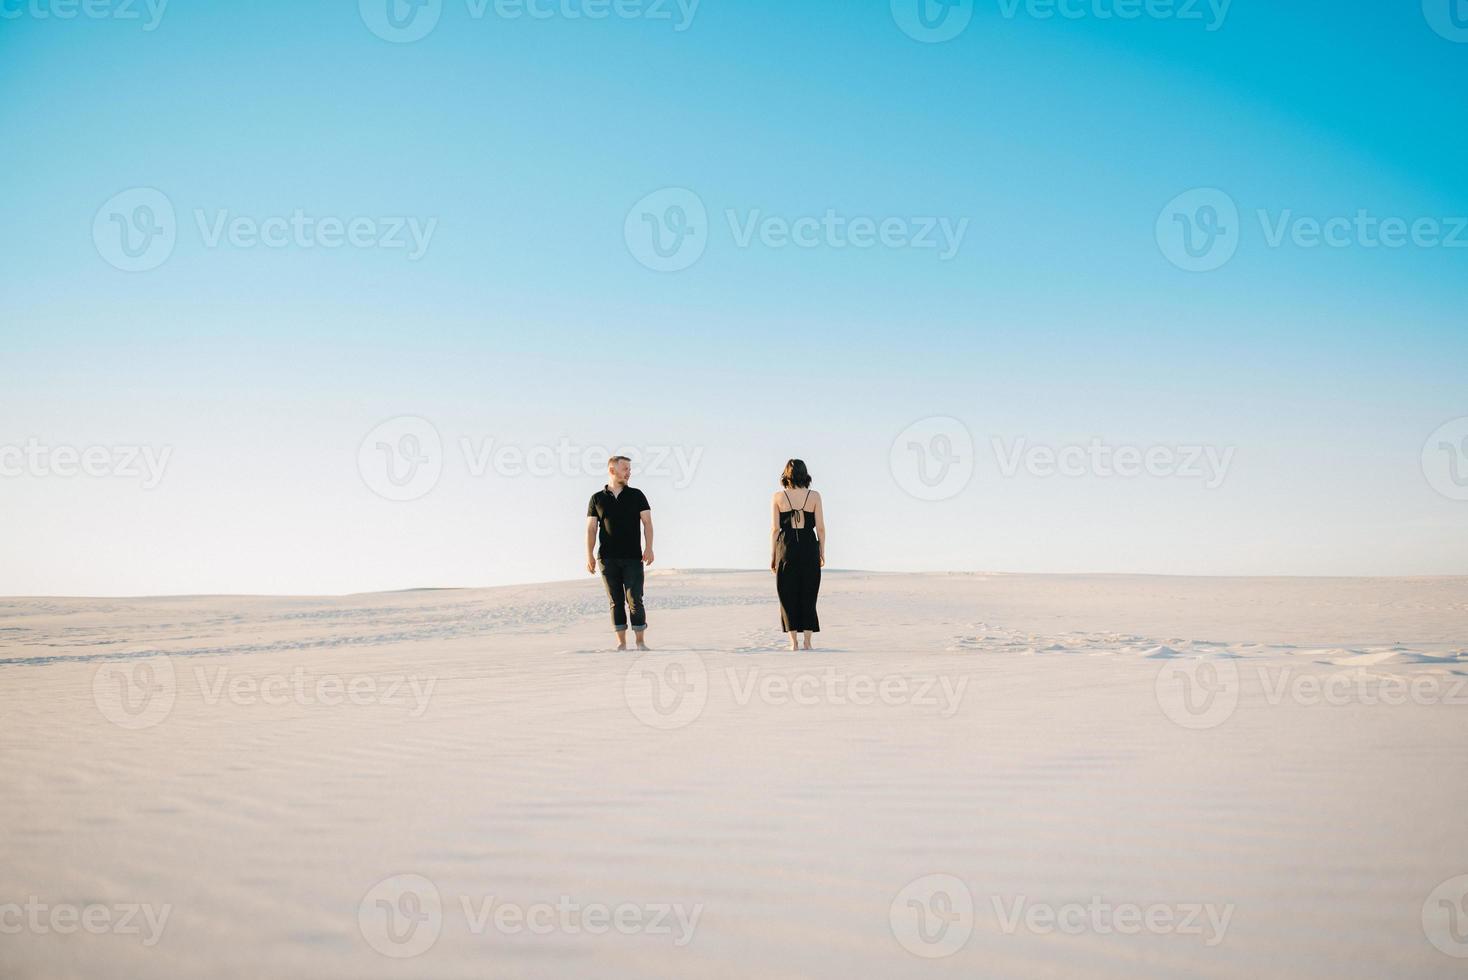 Pareja joven un chico y una chica con emociones alegres en ropa negra caminan por el desierto blanco foto